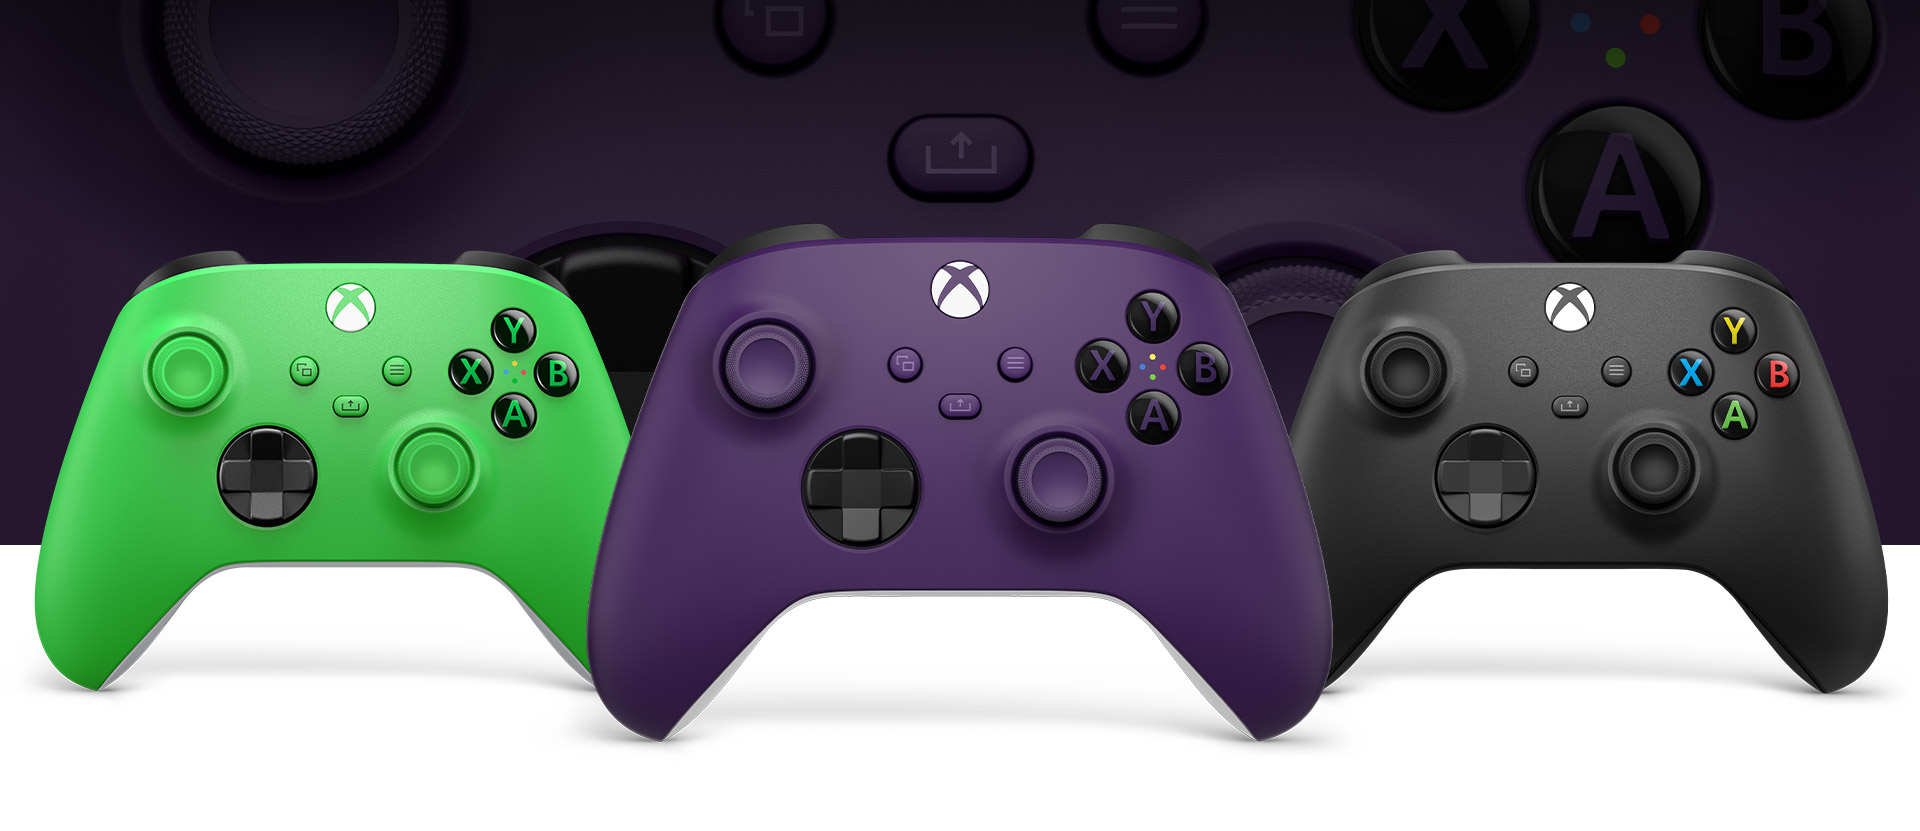 Xbox Purple Controller im Vordergrund, Green links daneben und Carbon Black rechts daneben